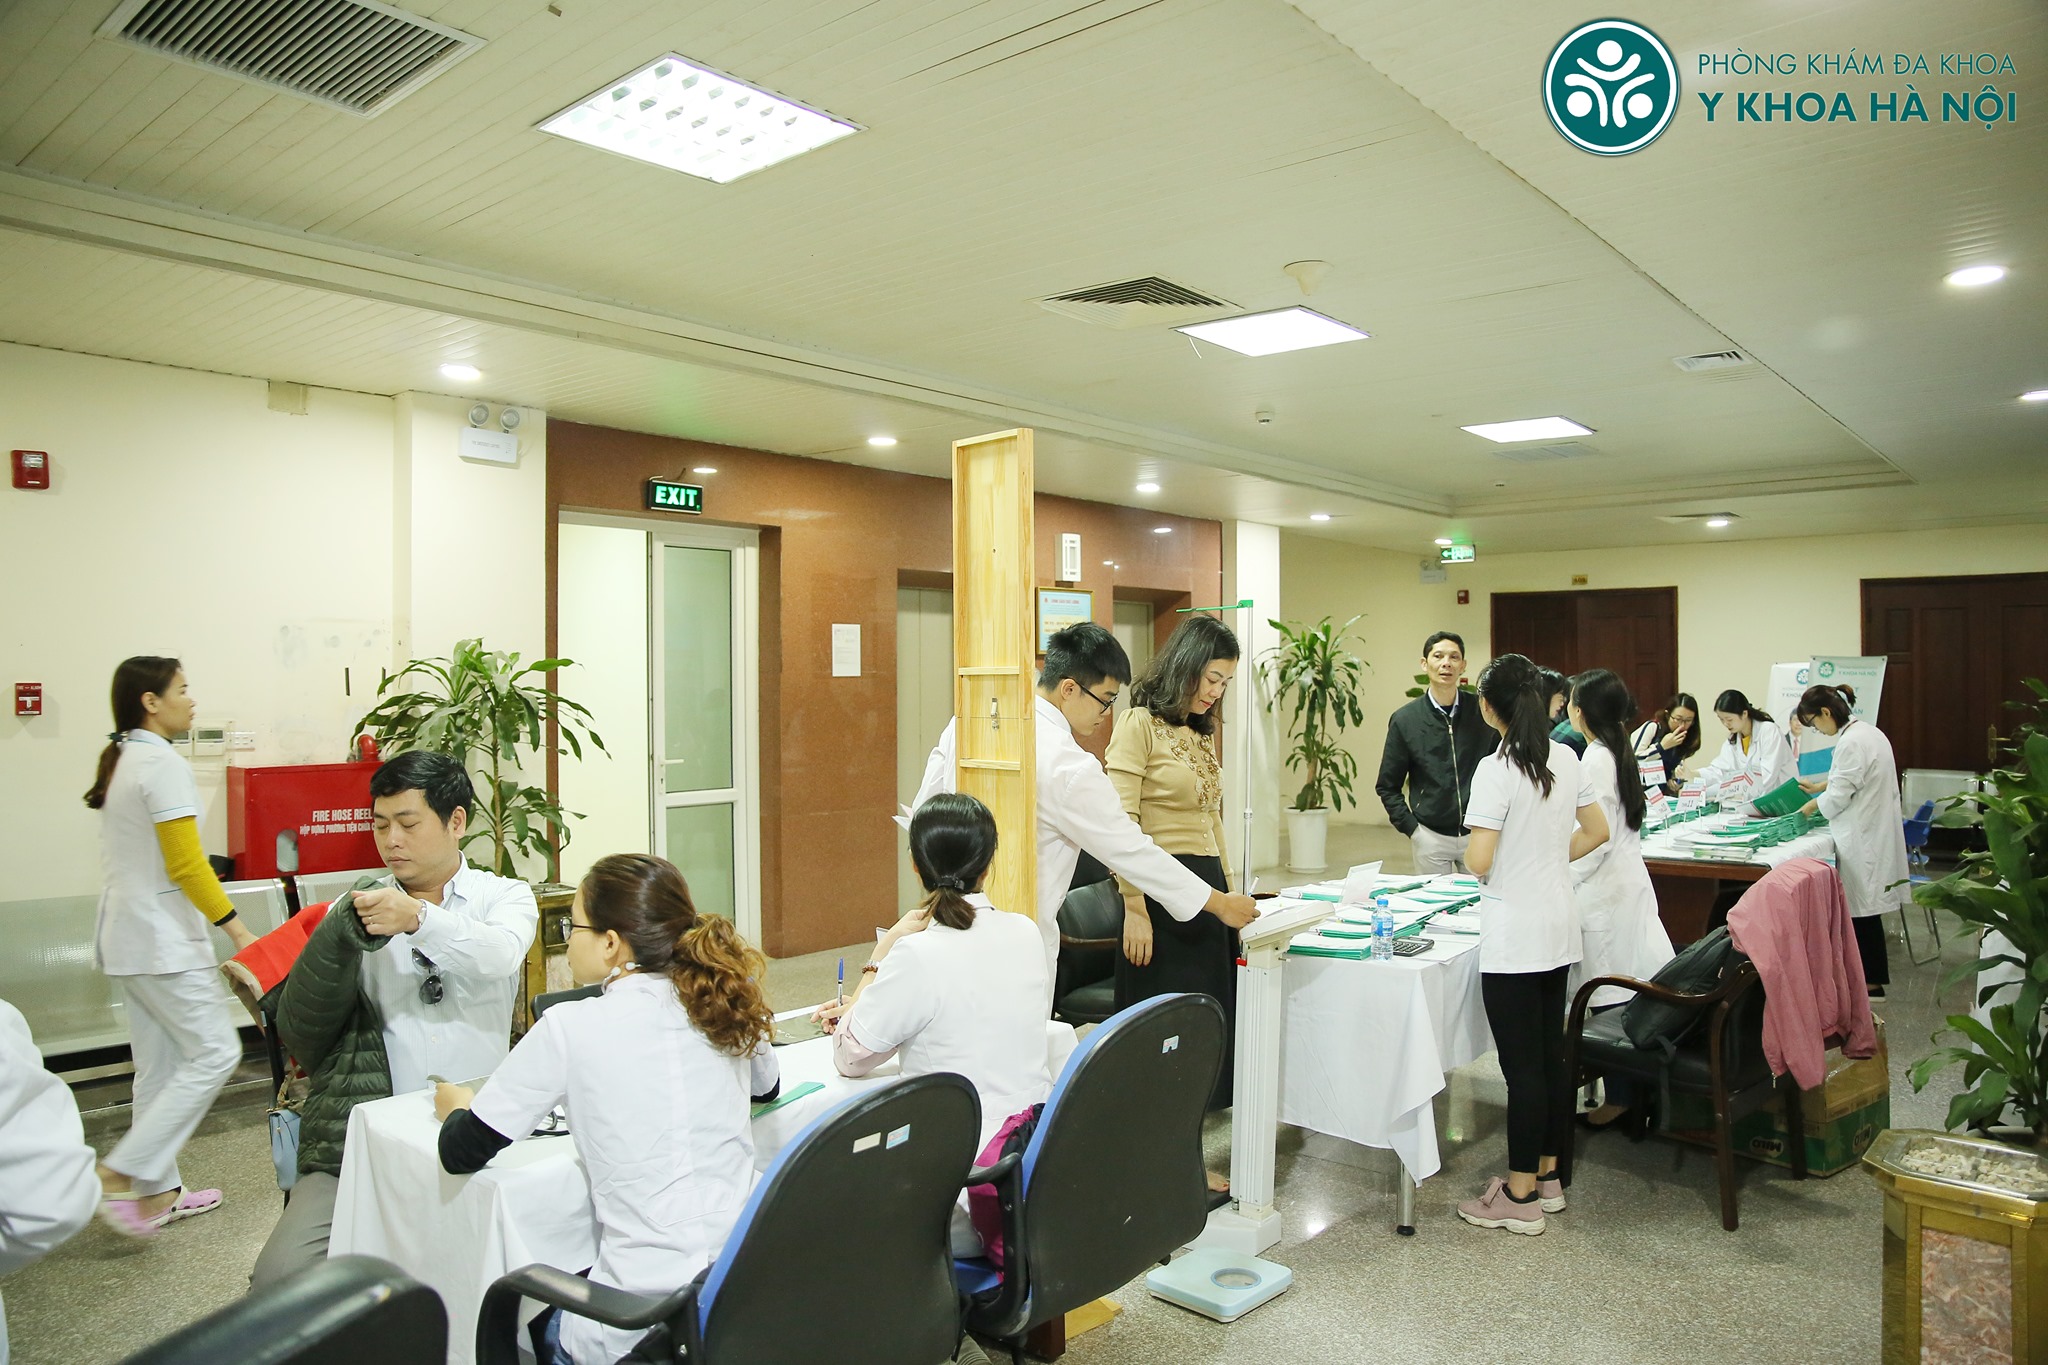 Khám sức khỏe doanh nghiệp tại Phòng khám Y khoa Hà Nội:...